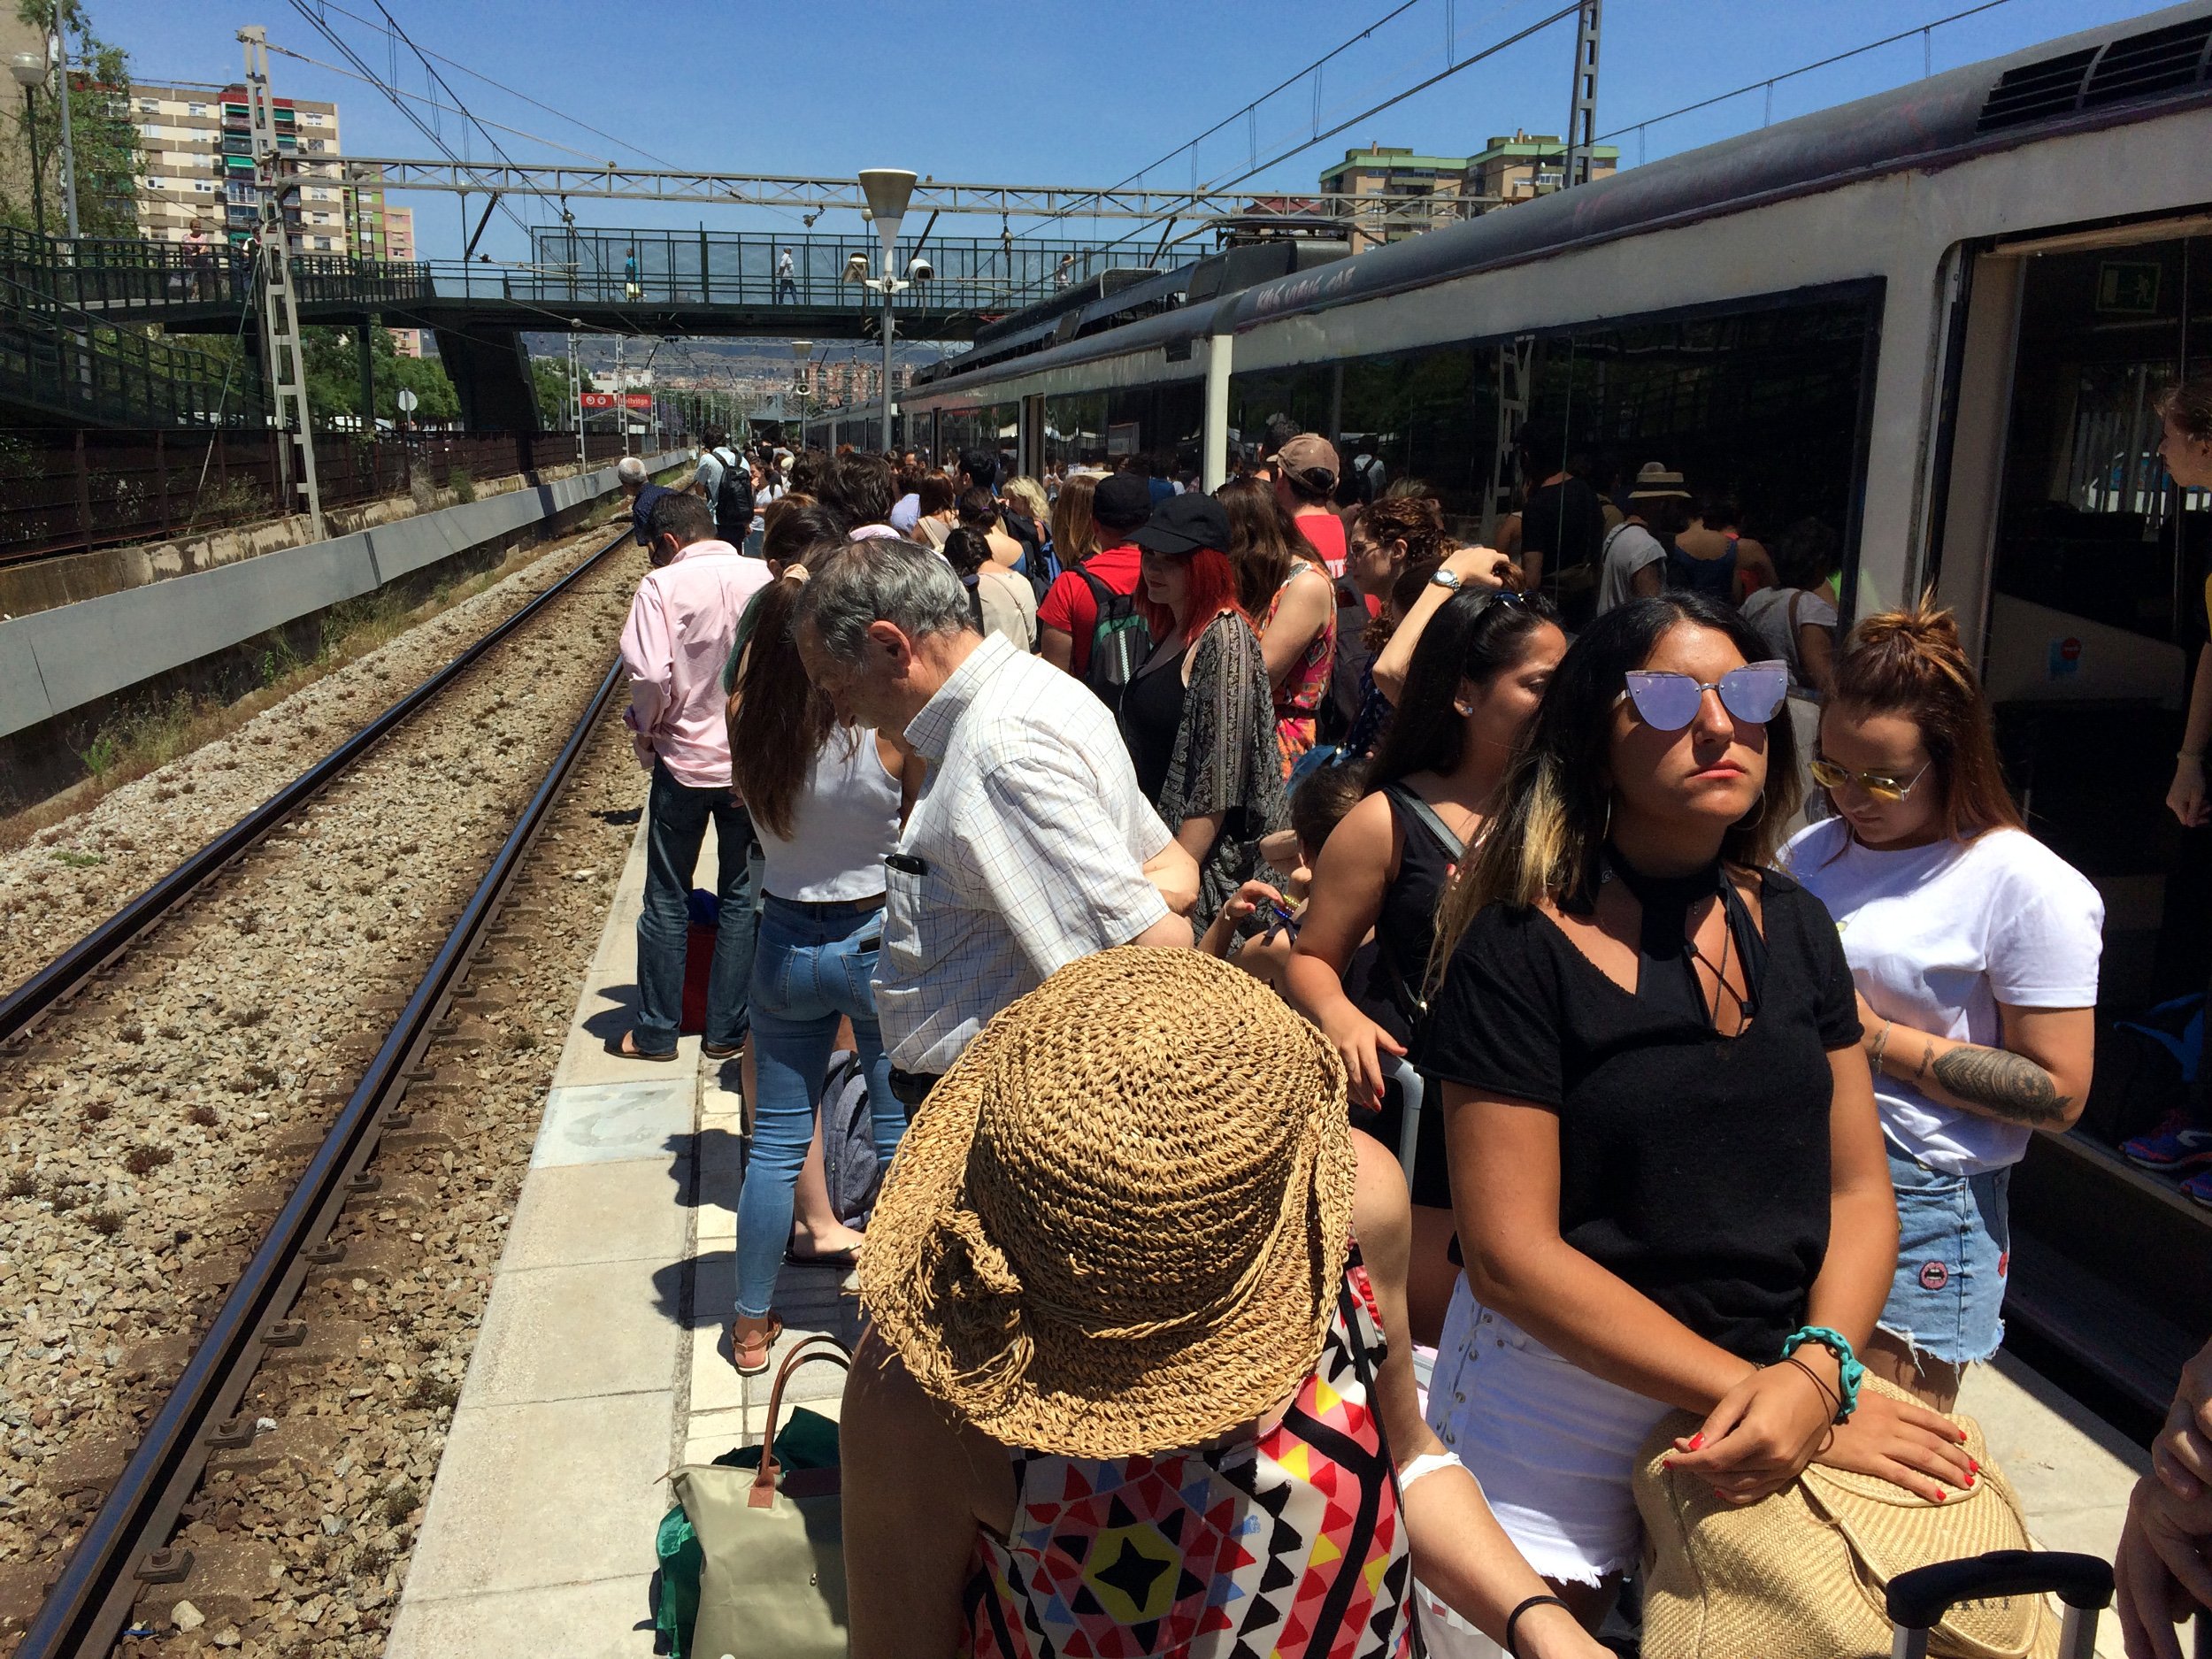 Desenes de passatgers entrampats per l'avaria d'un tren a Bellvitge